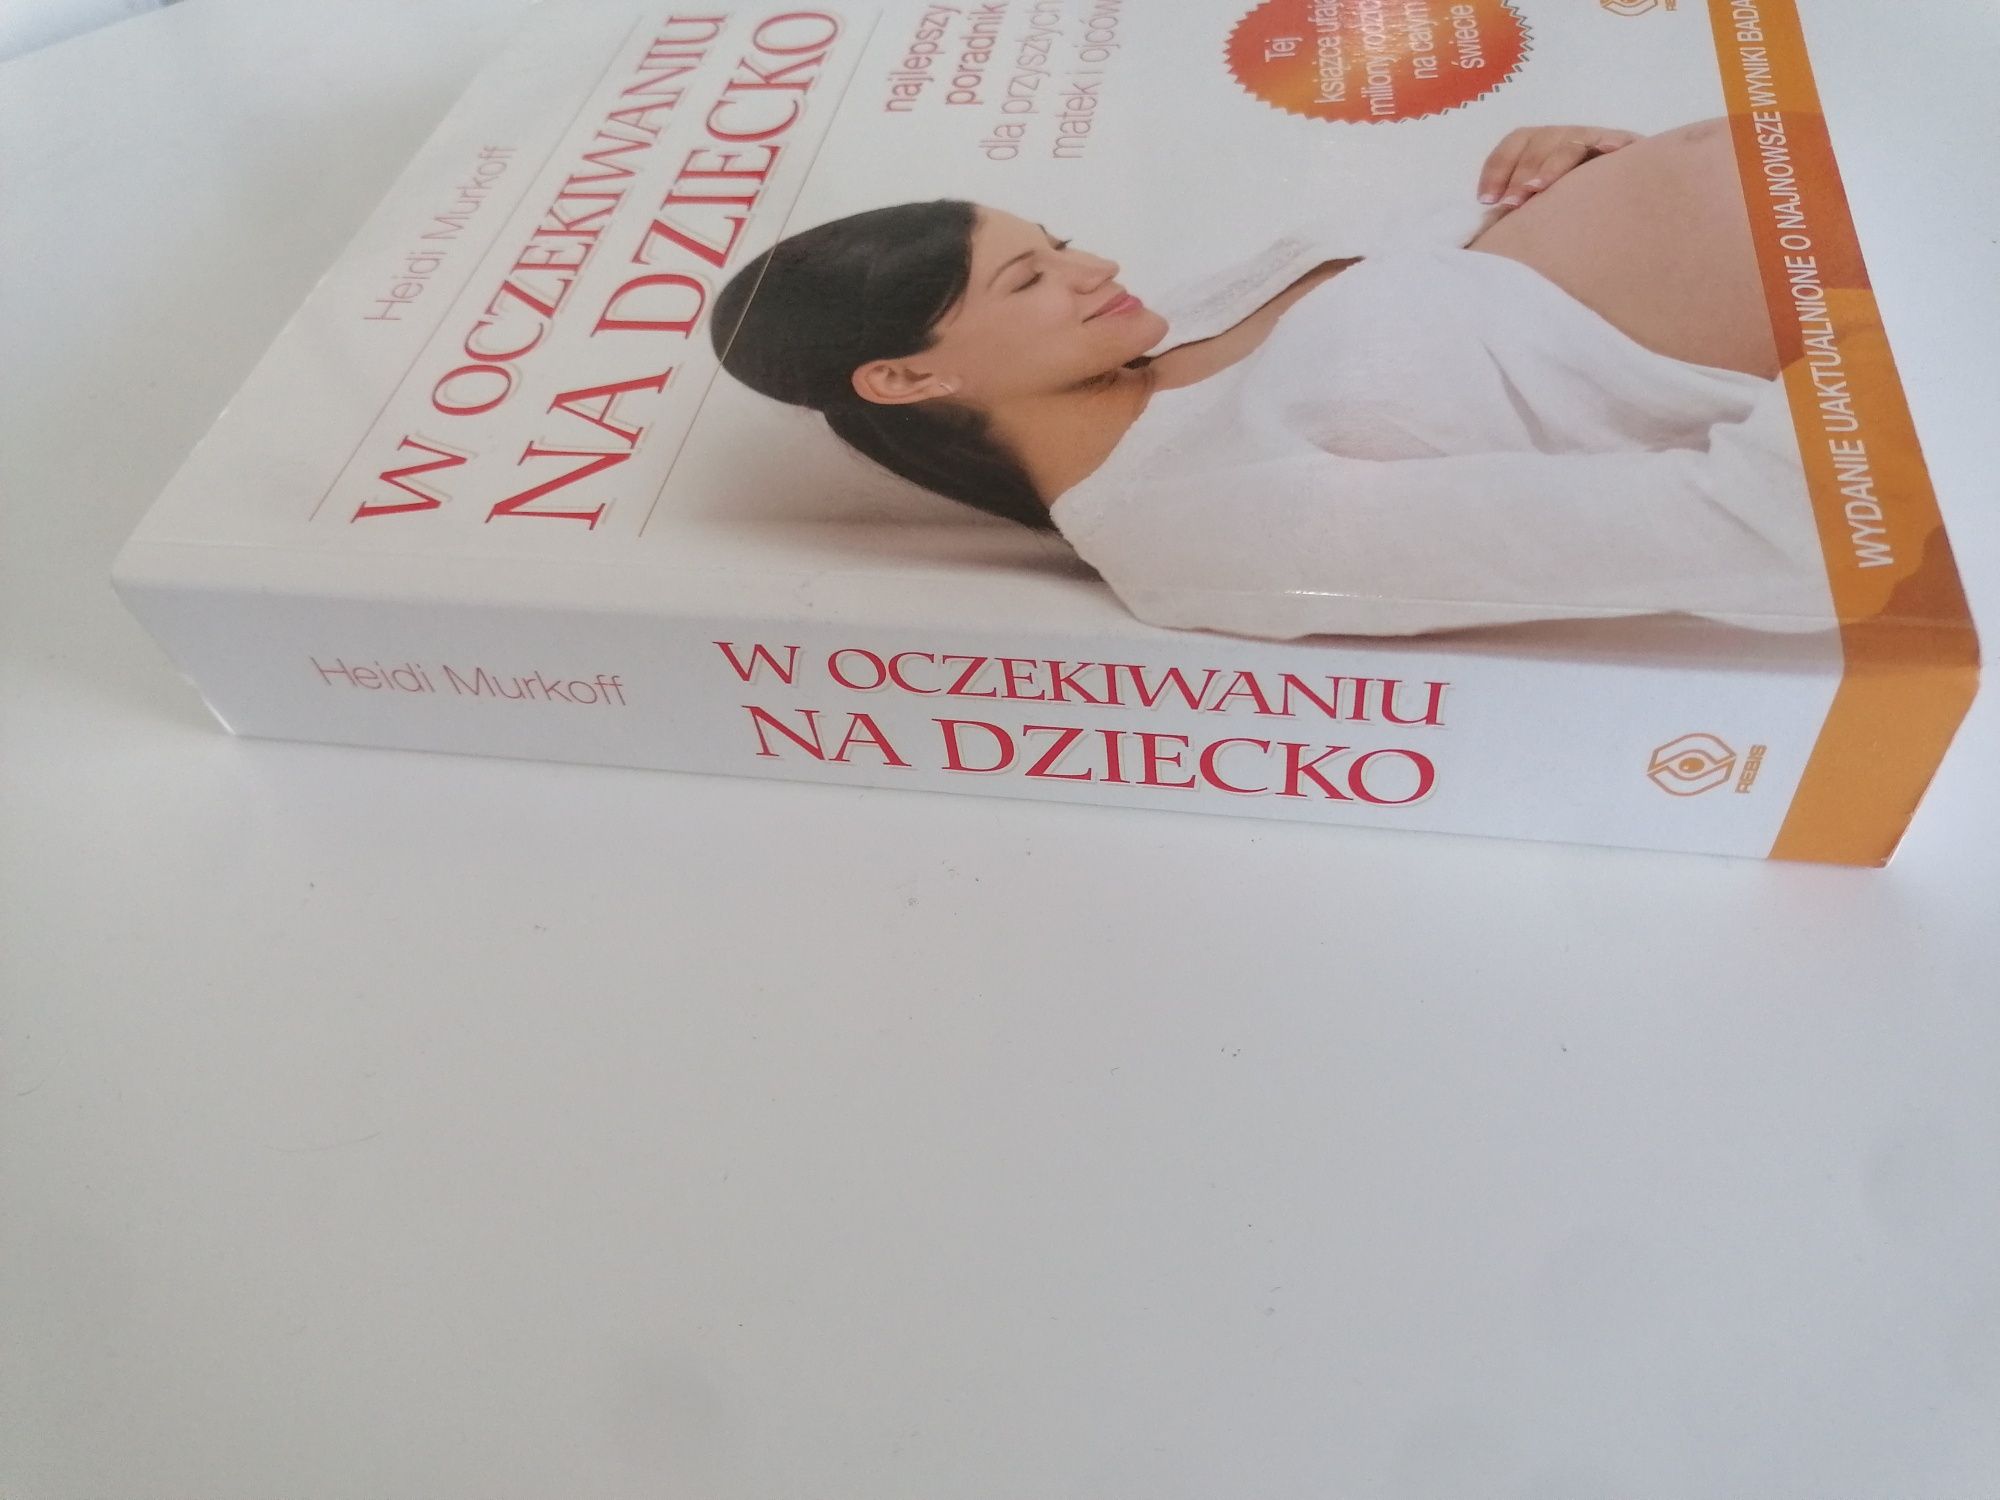 Książka w oczekiwaniu na dziecko Nowe wydanie!